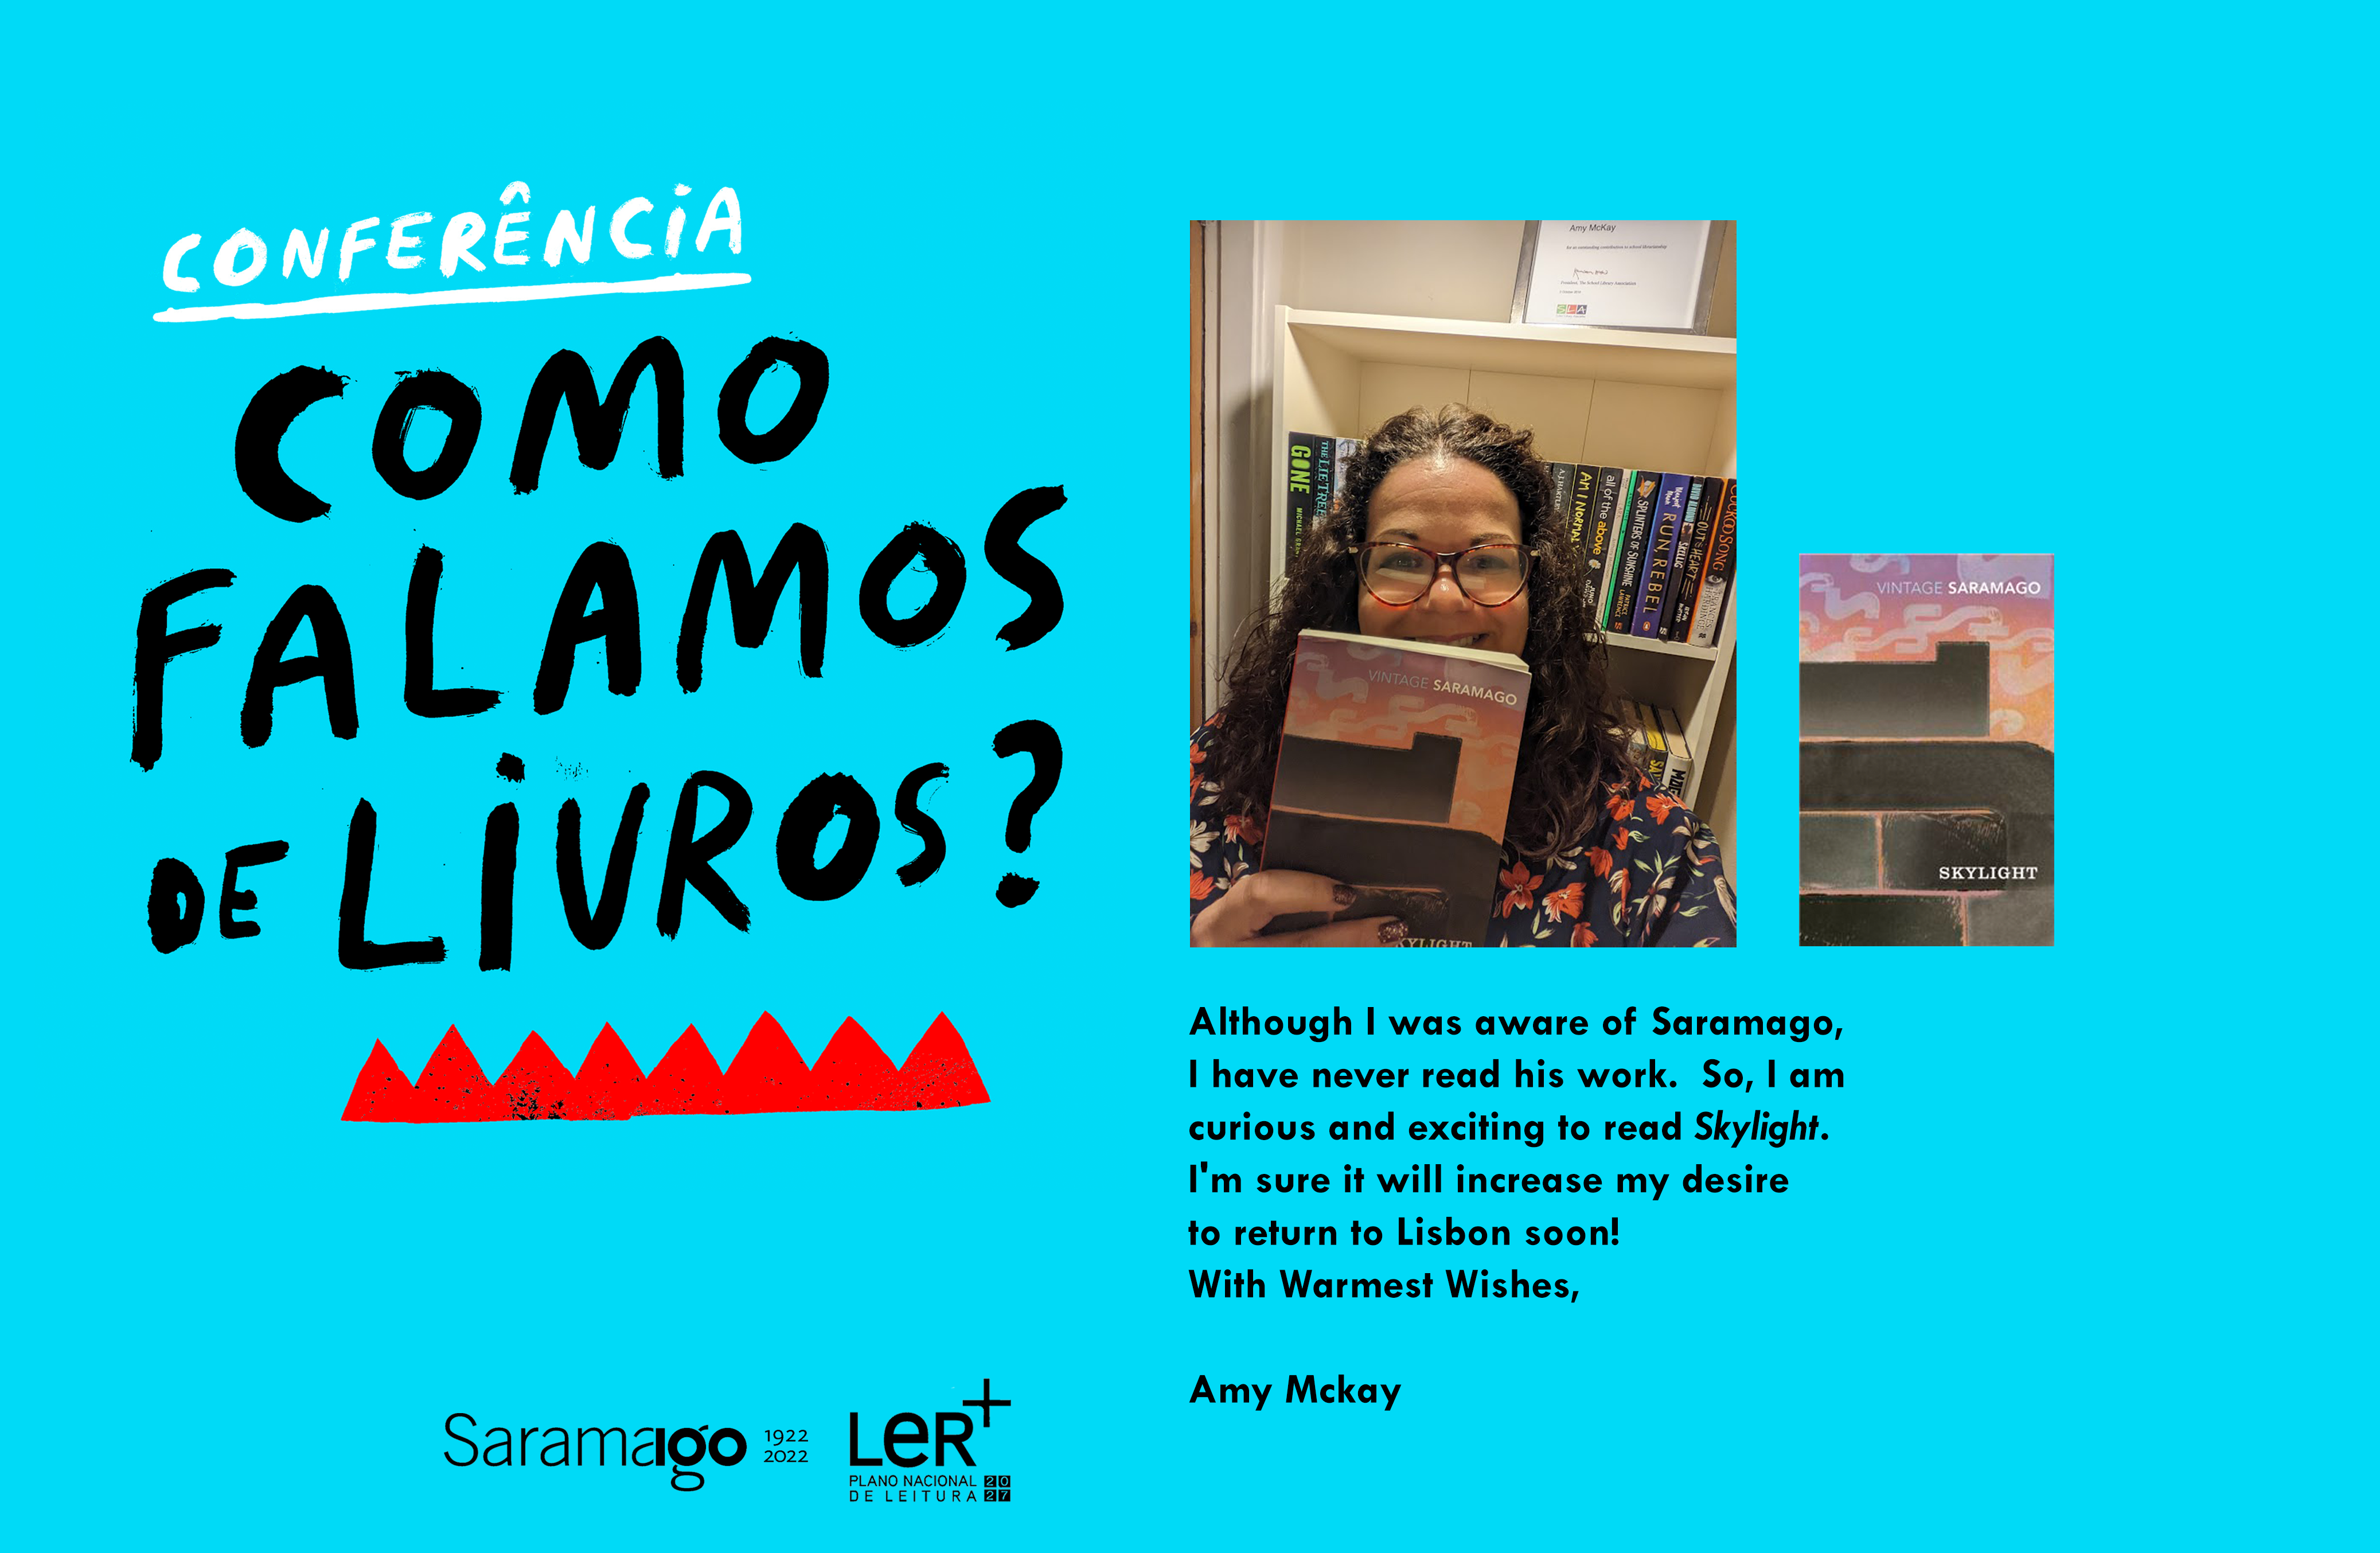 Ler_Saramago_AMckay.png